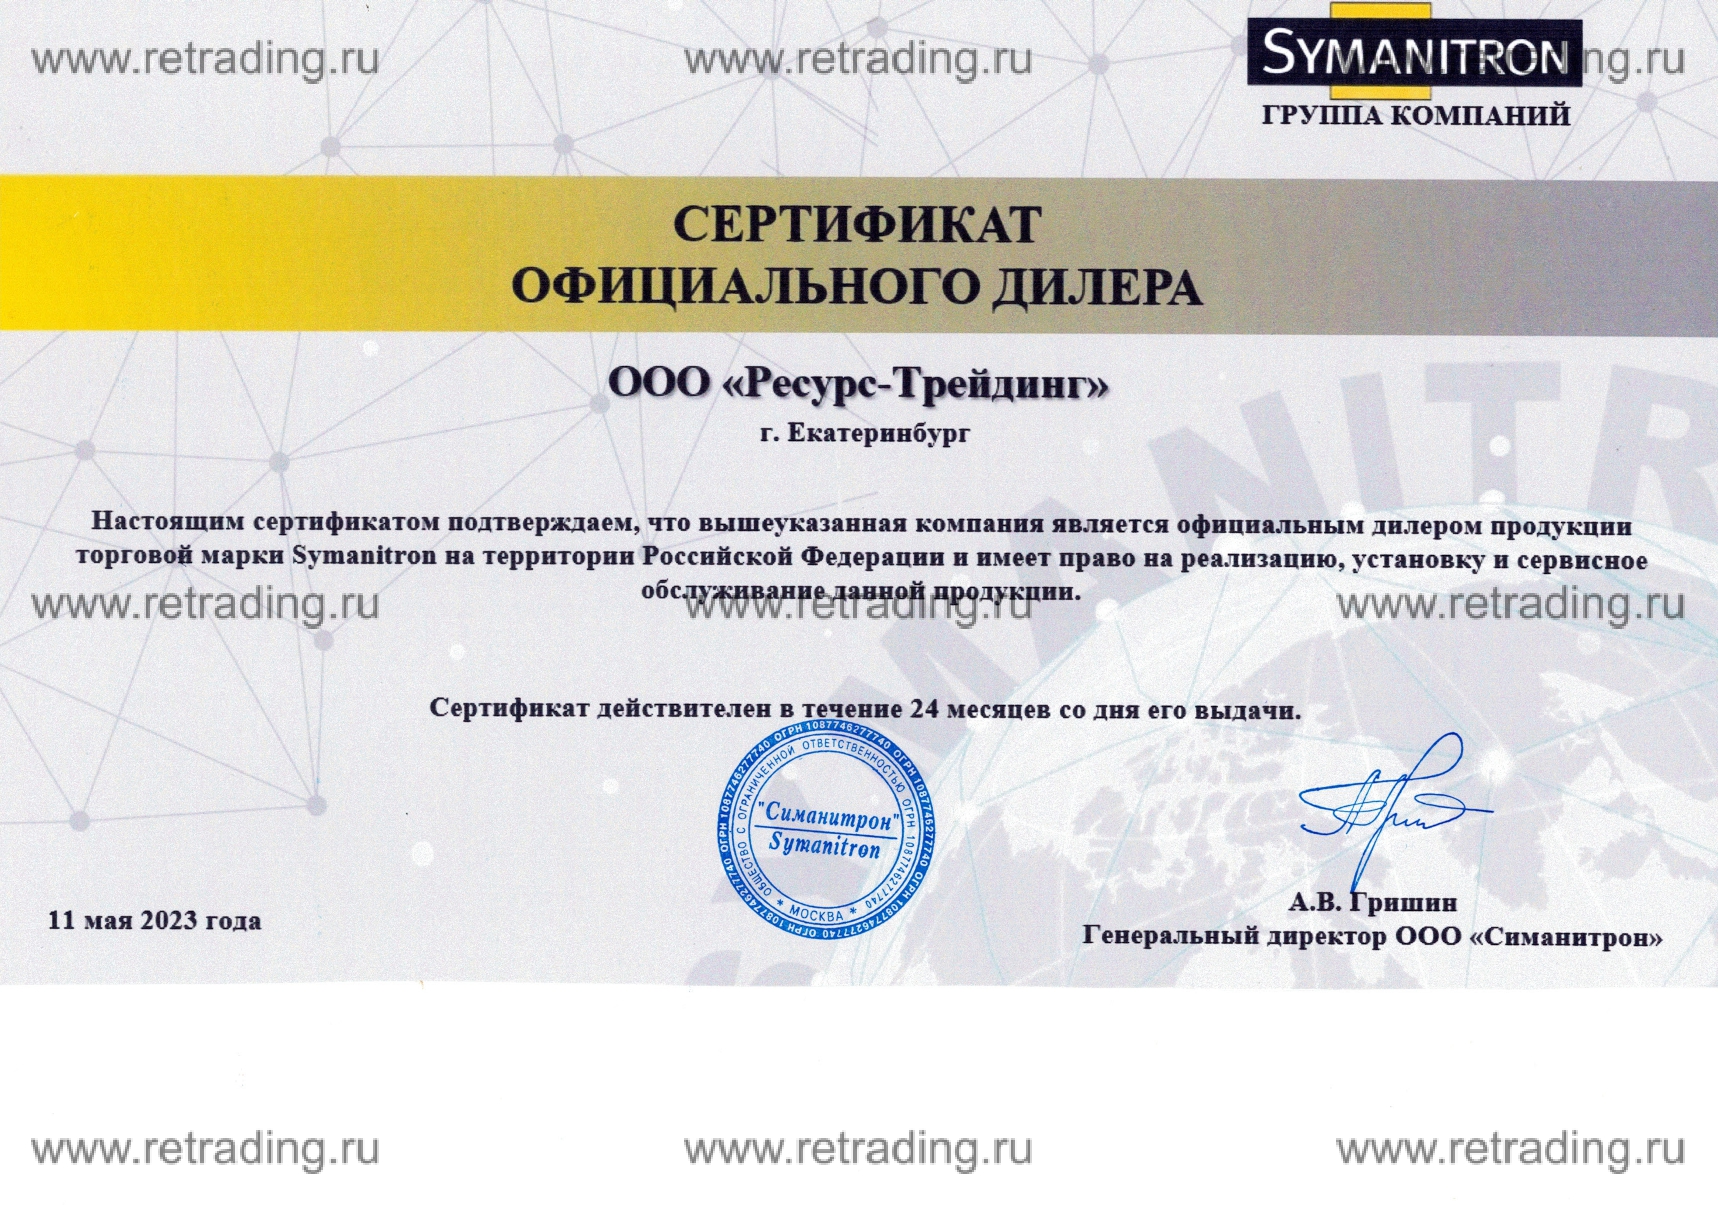 Сертификат Официального Дилера Symanitron